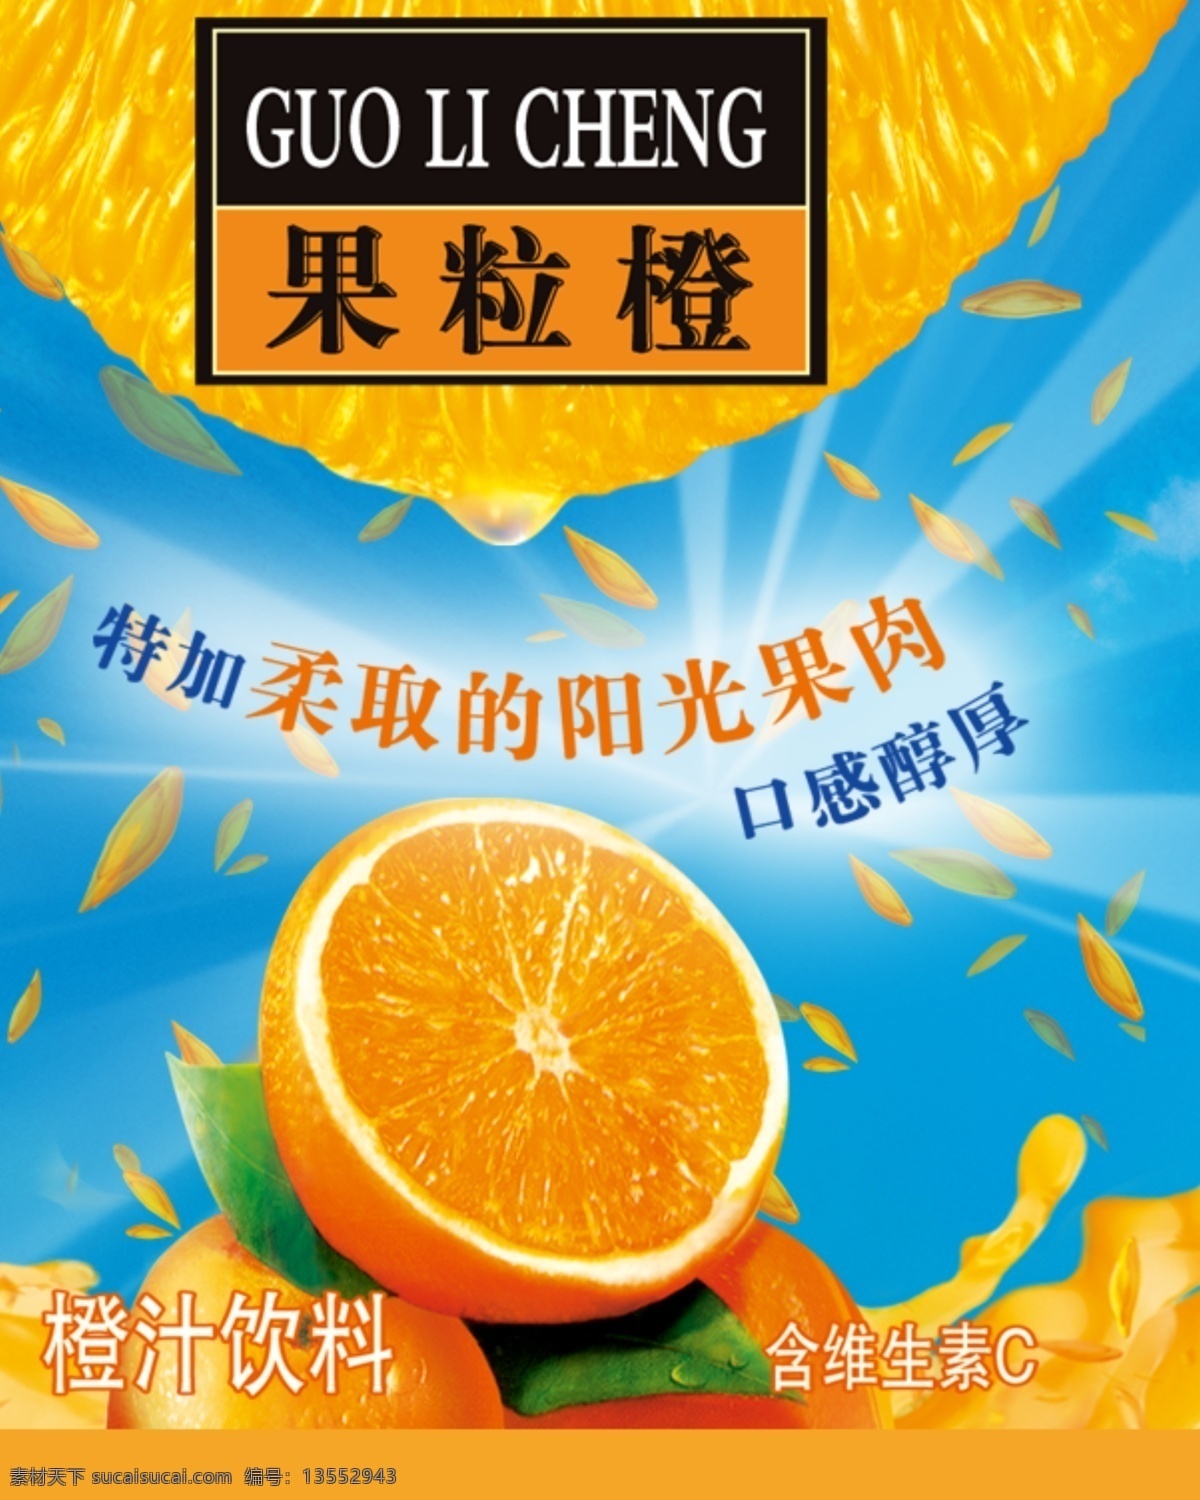 果粒橙 橙 光 蓝天 psd素材 源文件库